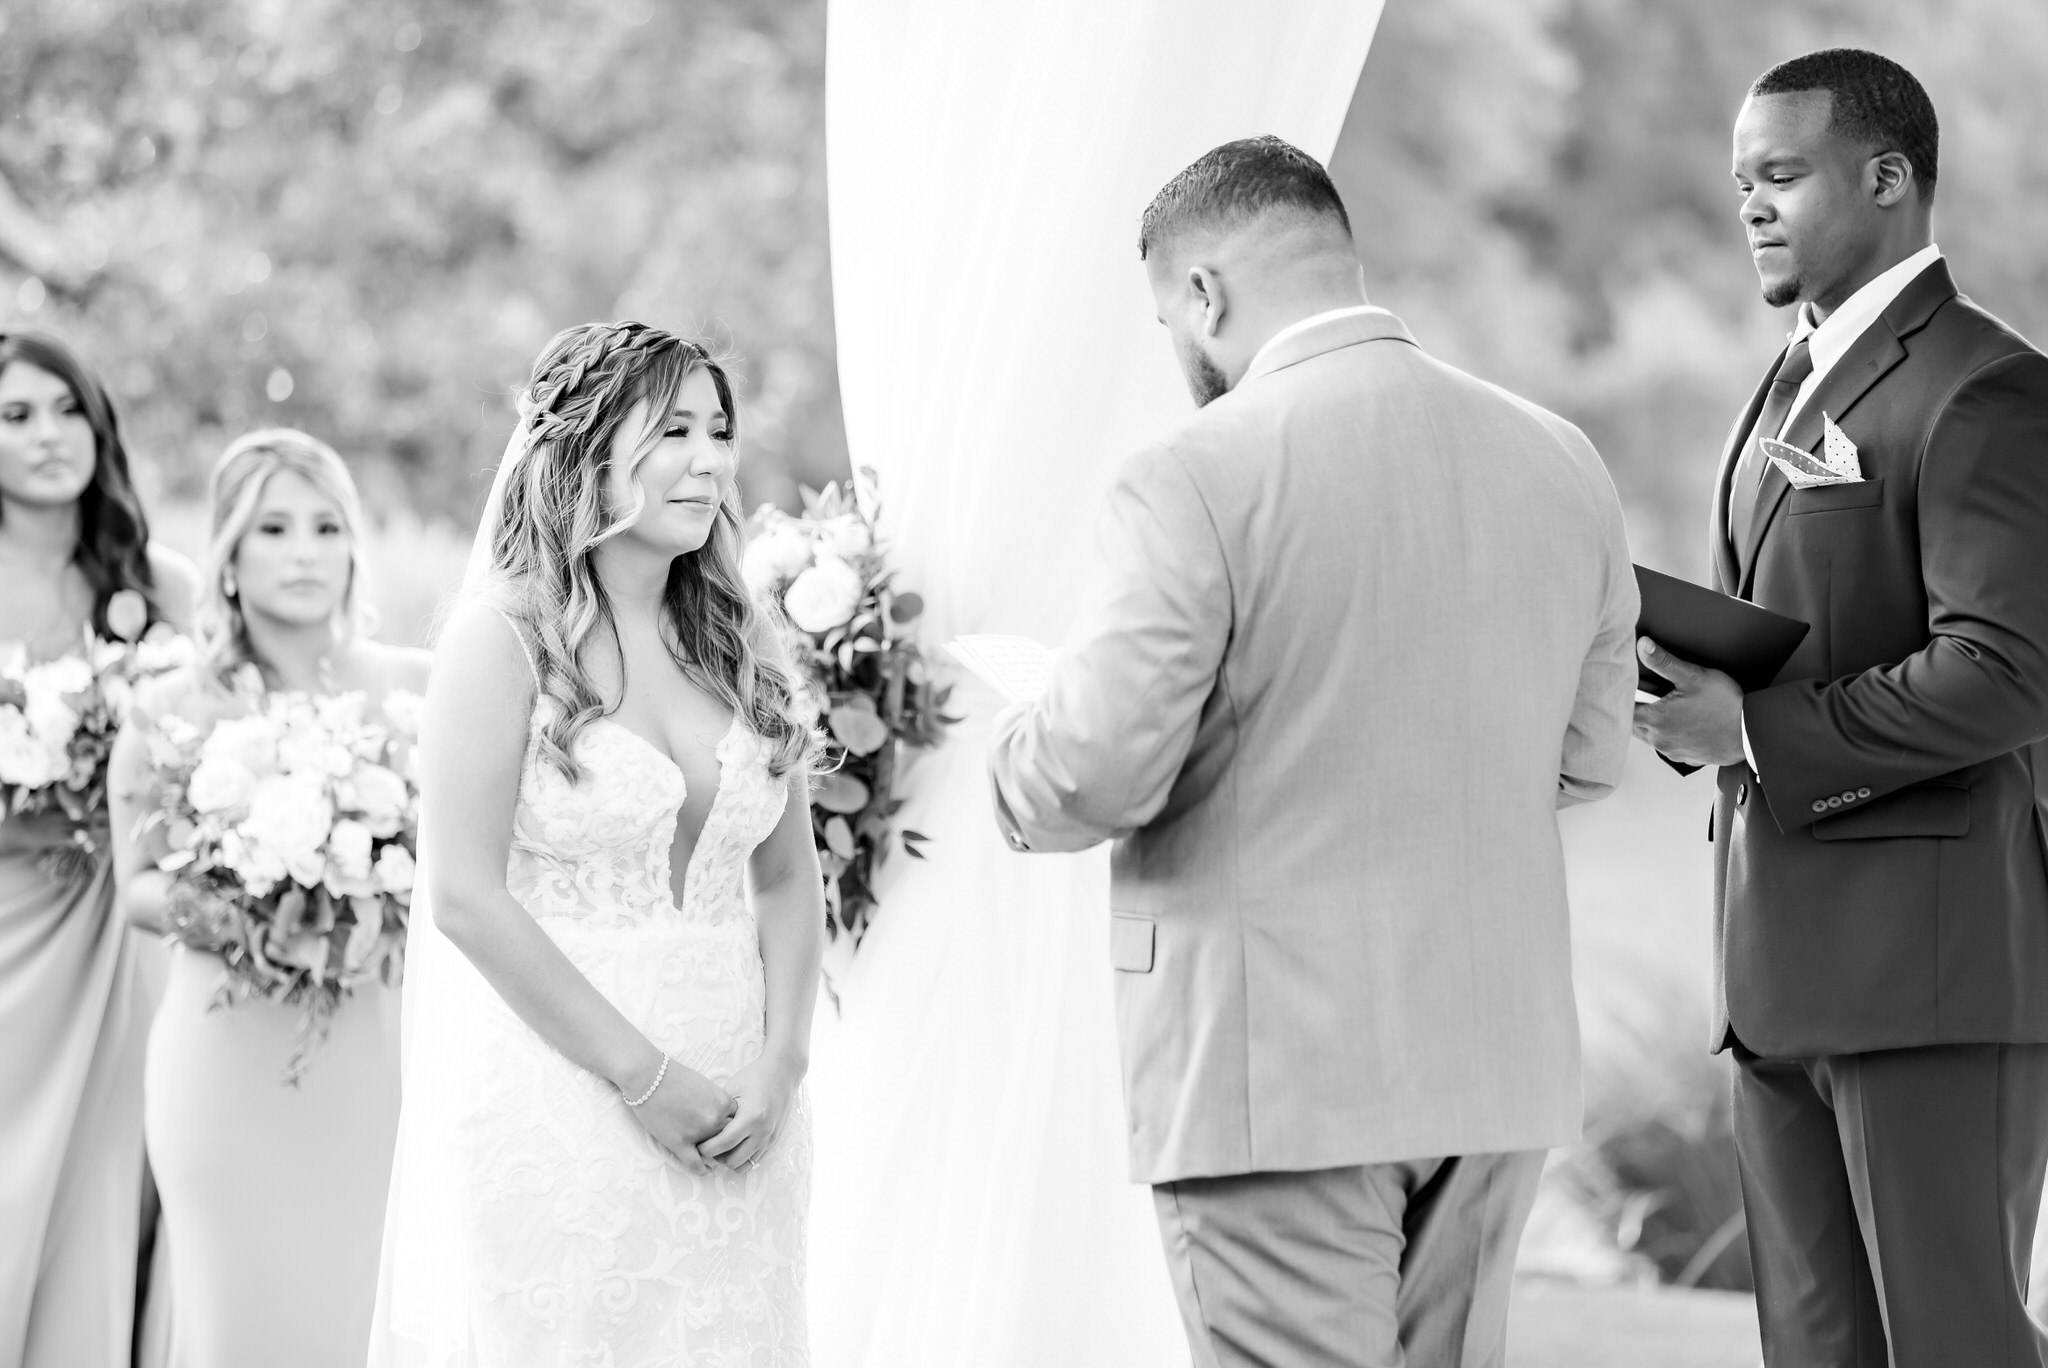 A Blush & Ivory Wedding at Kendall Point in Boerne, TX by Dawn Elizabeth Studios, San Antonio Wedding Photographer